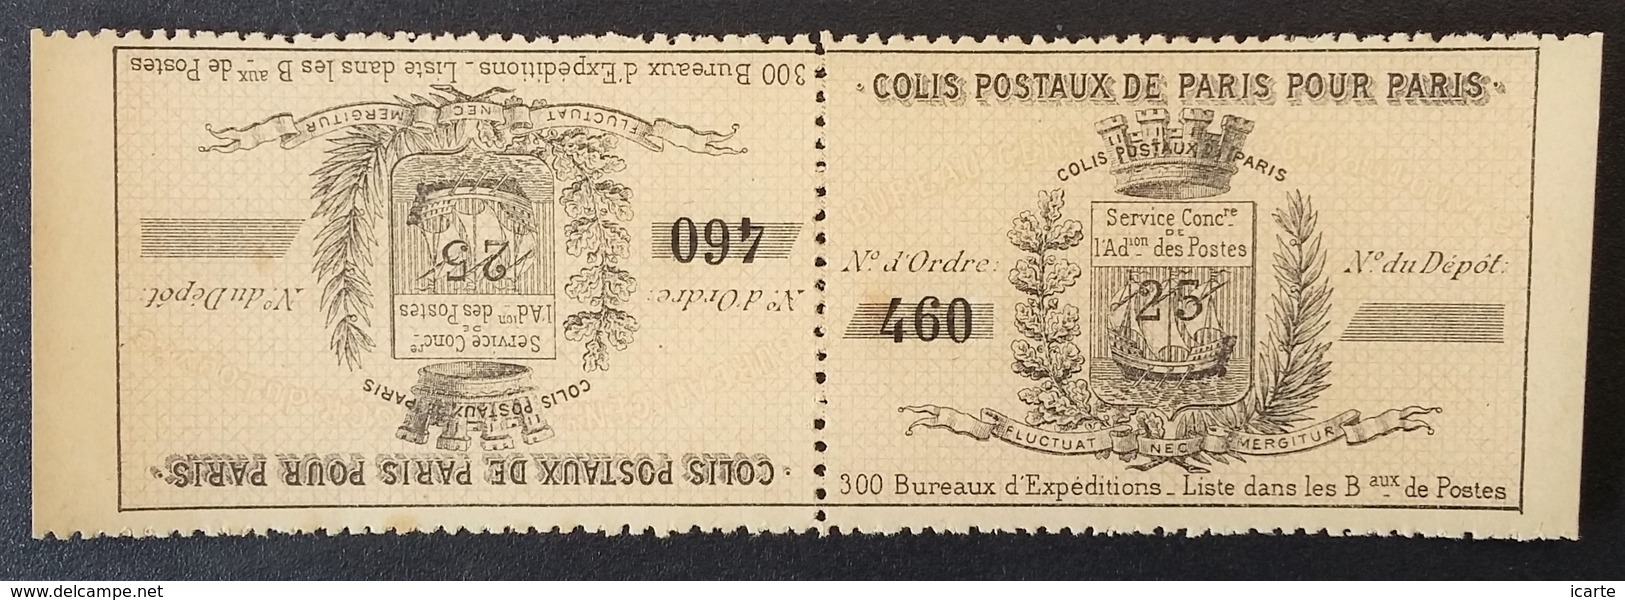 Timbre COLIS POSTAUX DE PARIS POUR PARIS 25 C Neuf Complet 1891 - Mint/Hinged